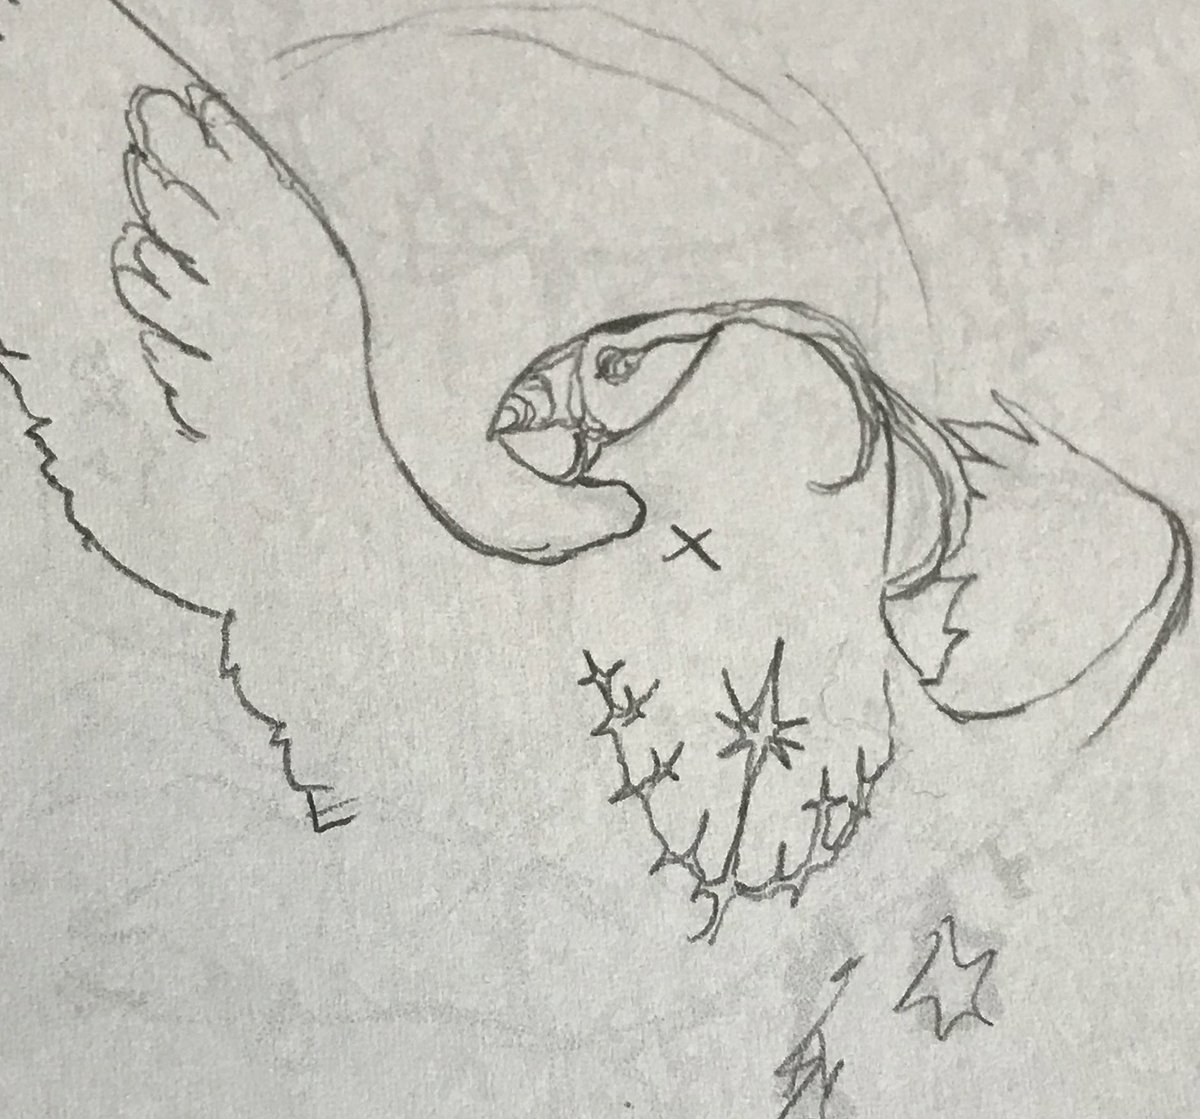 エトピリカも同時進行しています
ウミスズメの中で一番好きな鳥です   エトピリカを見て水族館で一番テンションが上がったことが過去にある
Tufted Puffinの英名の通り、頭に房状の飾り羽が目立ちます  可愛いですね 